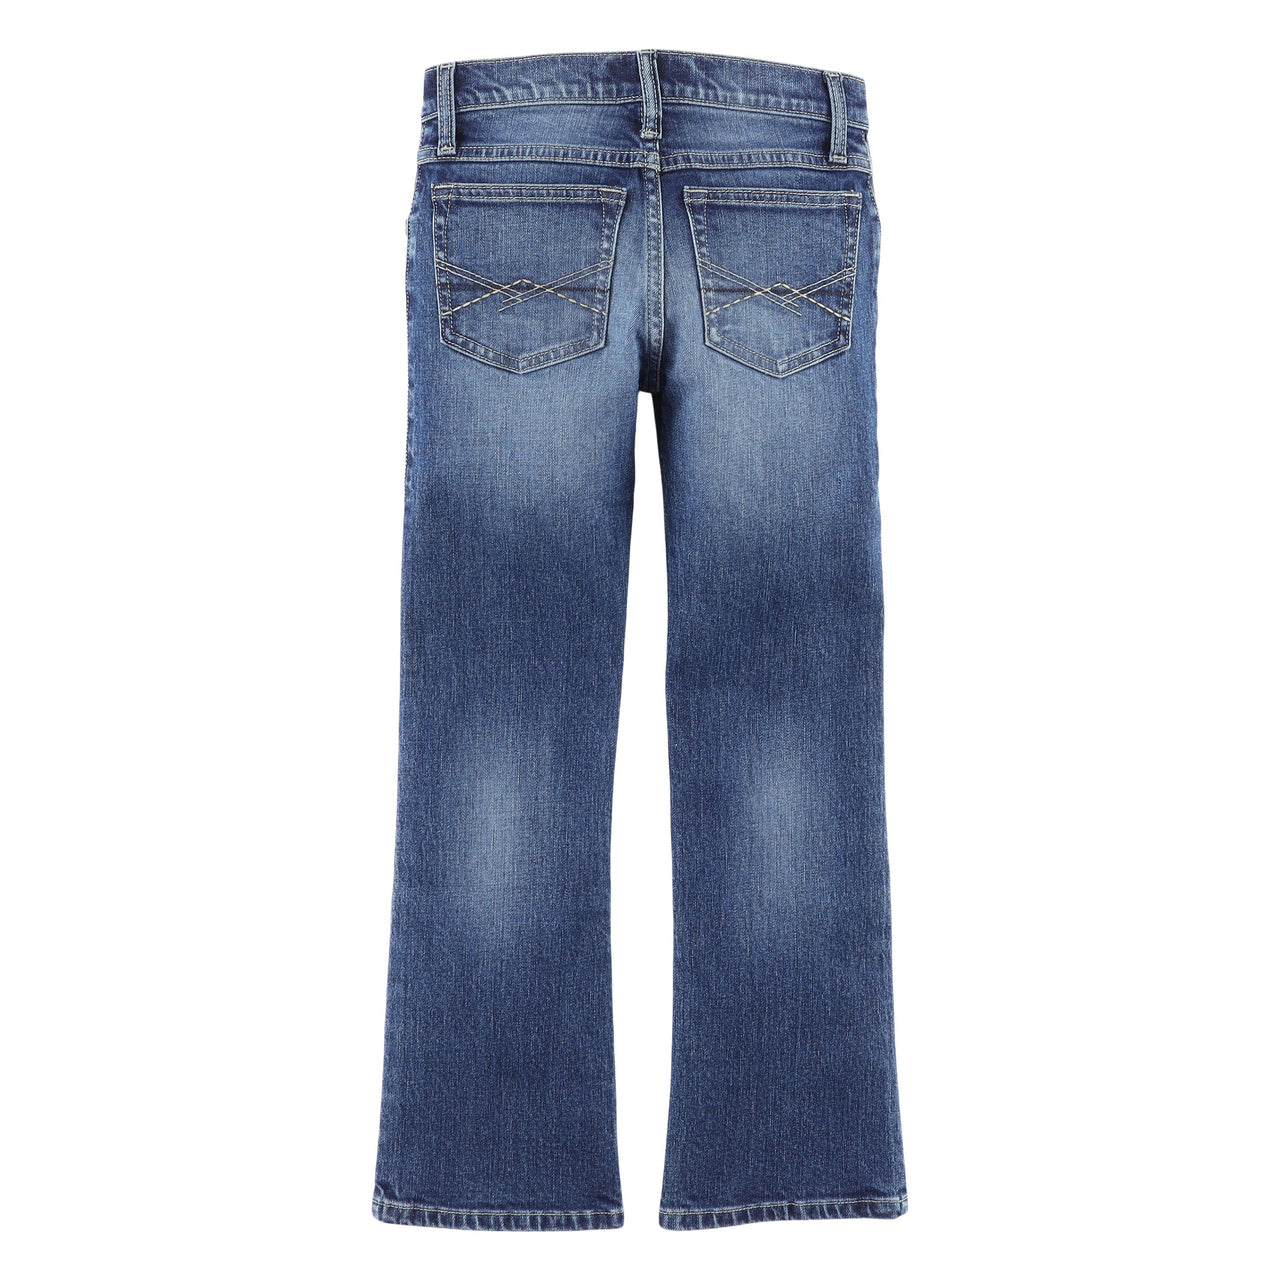 Wrangler Boy's Retro Slim Bootcut Jeans - Sorrel